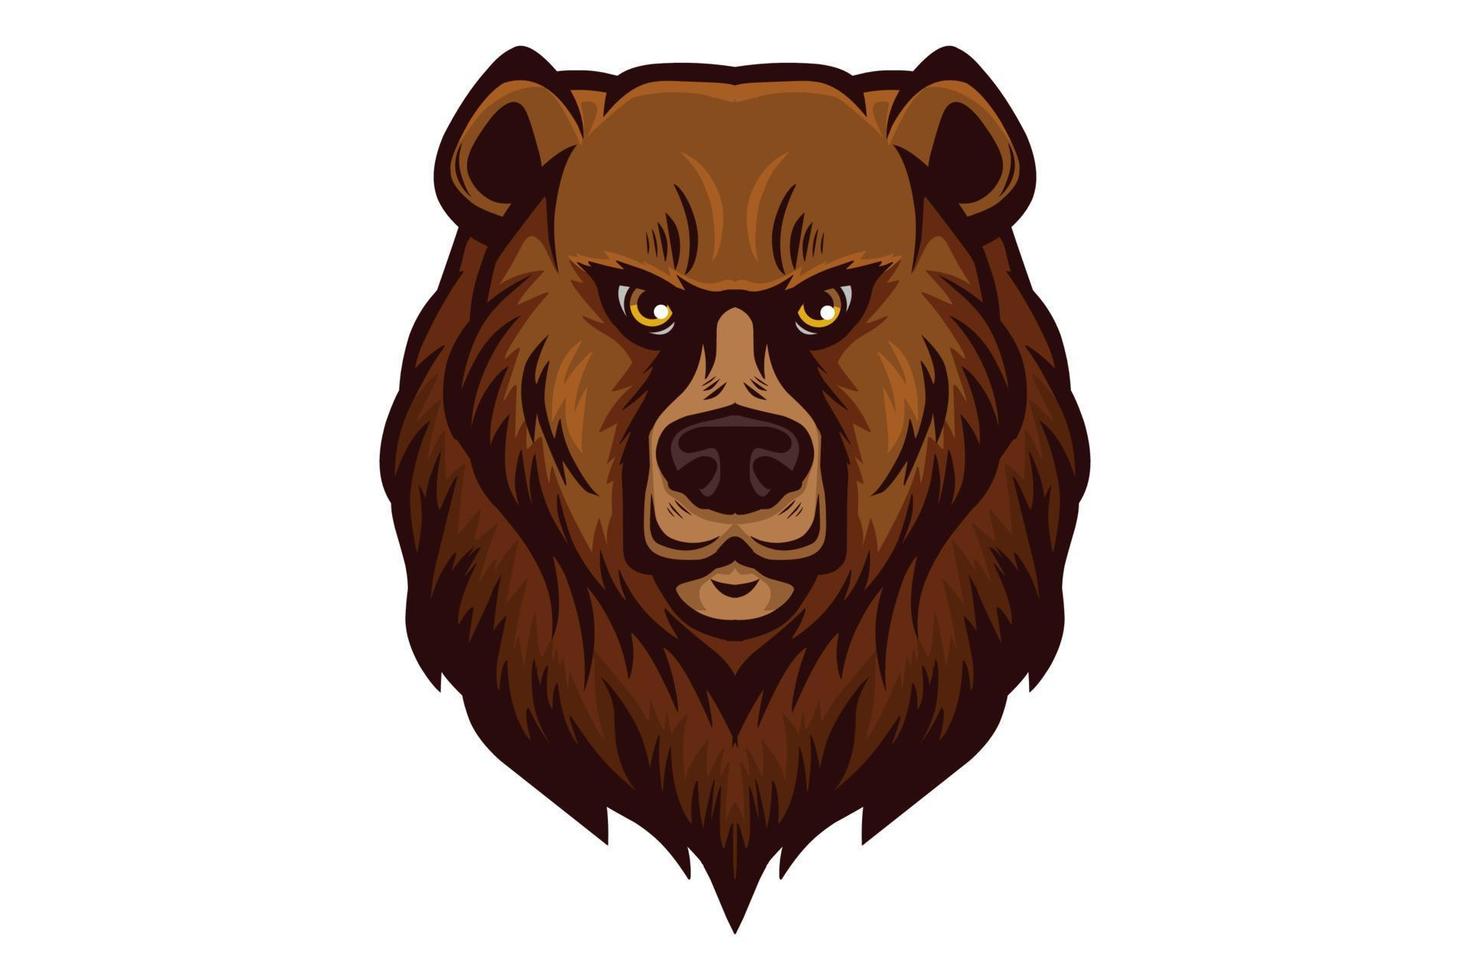 illustrazione vettoriale testa d'orso